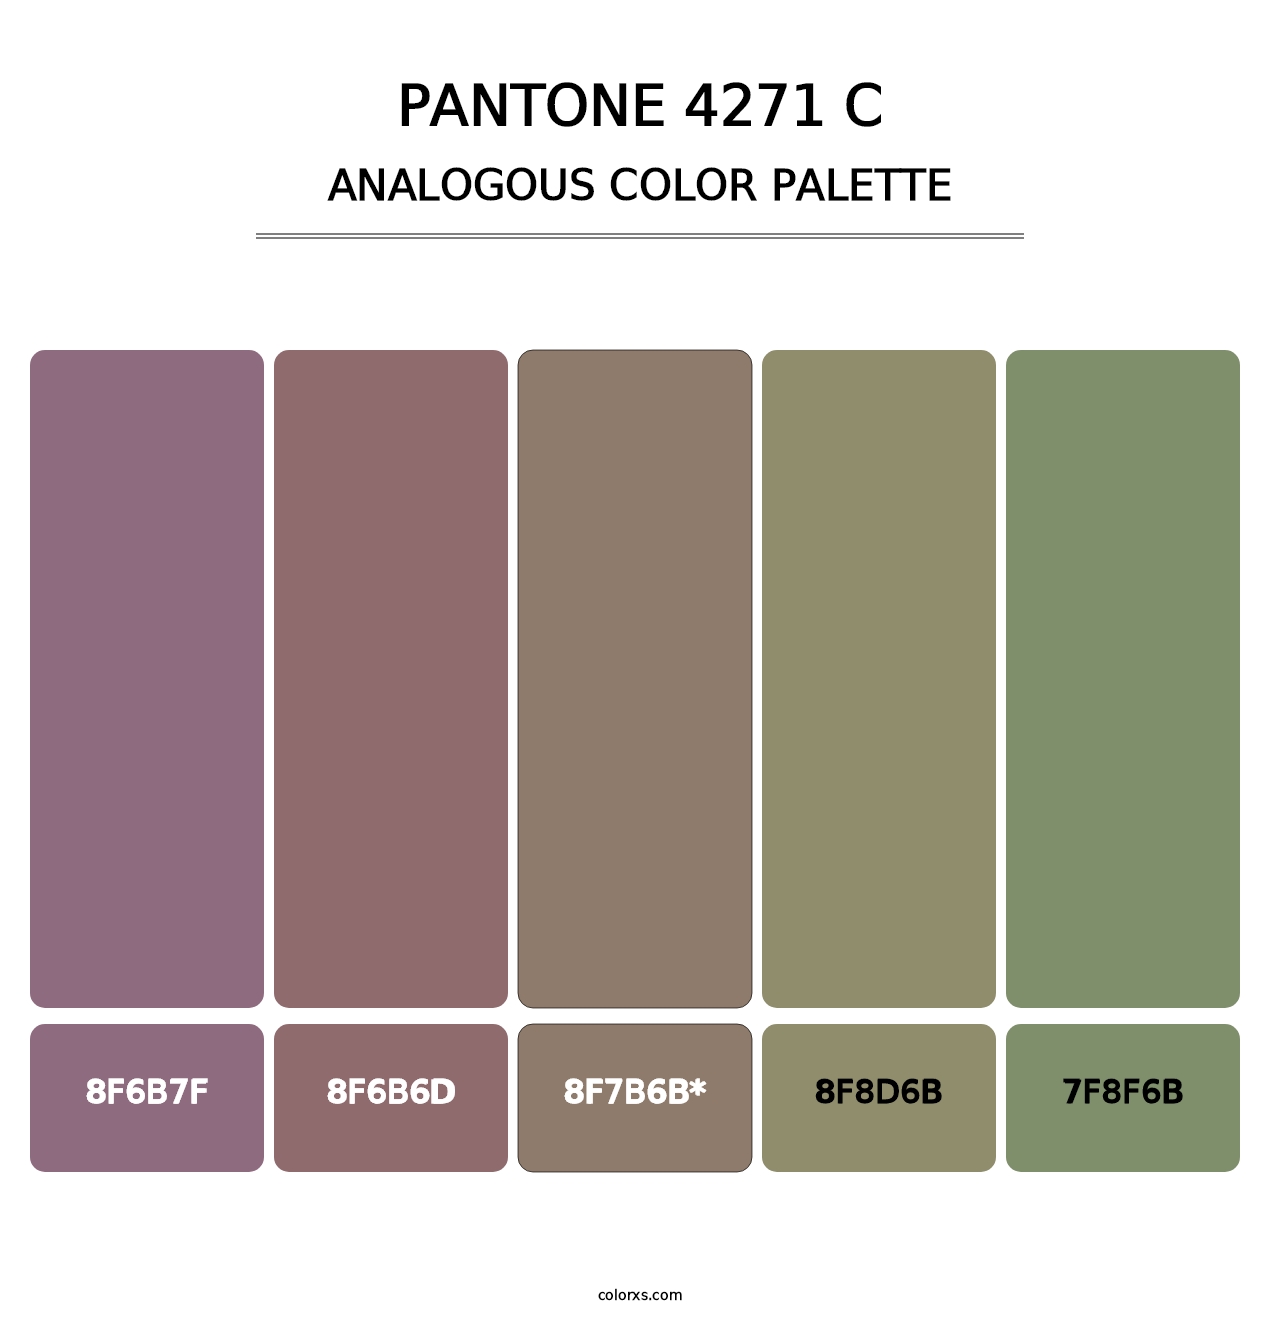 PANTONE 4271 C - Analogous Color Palette